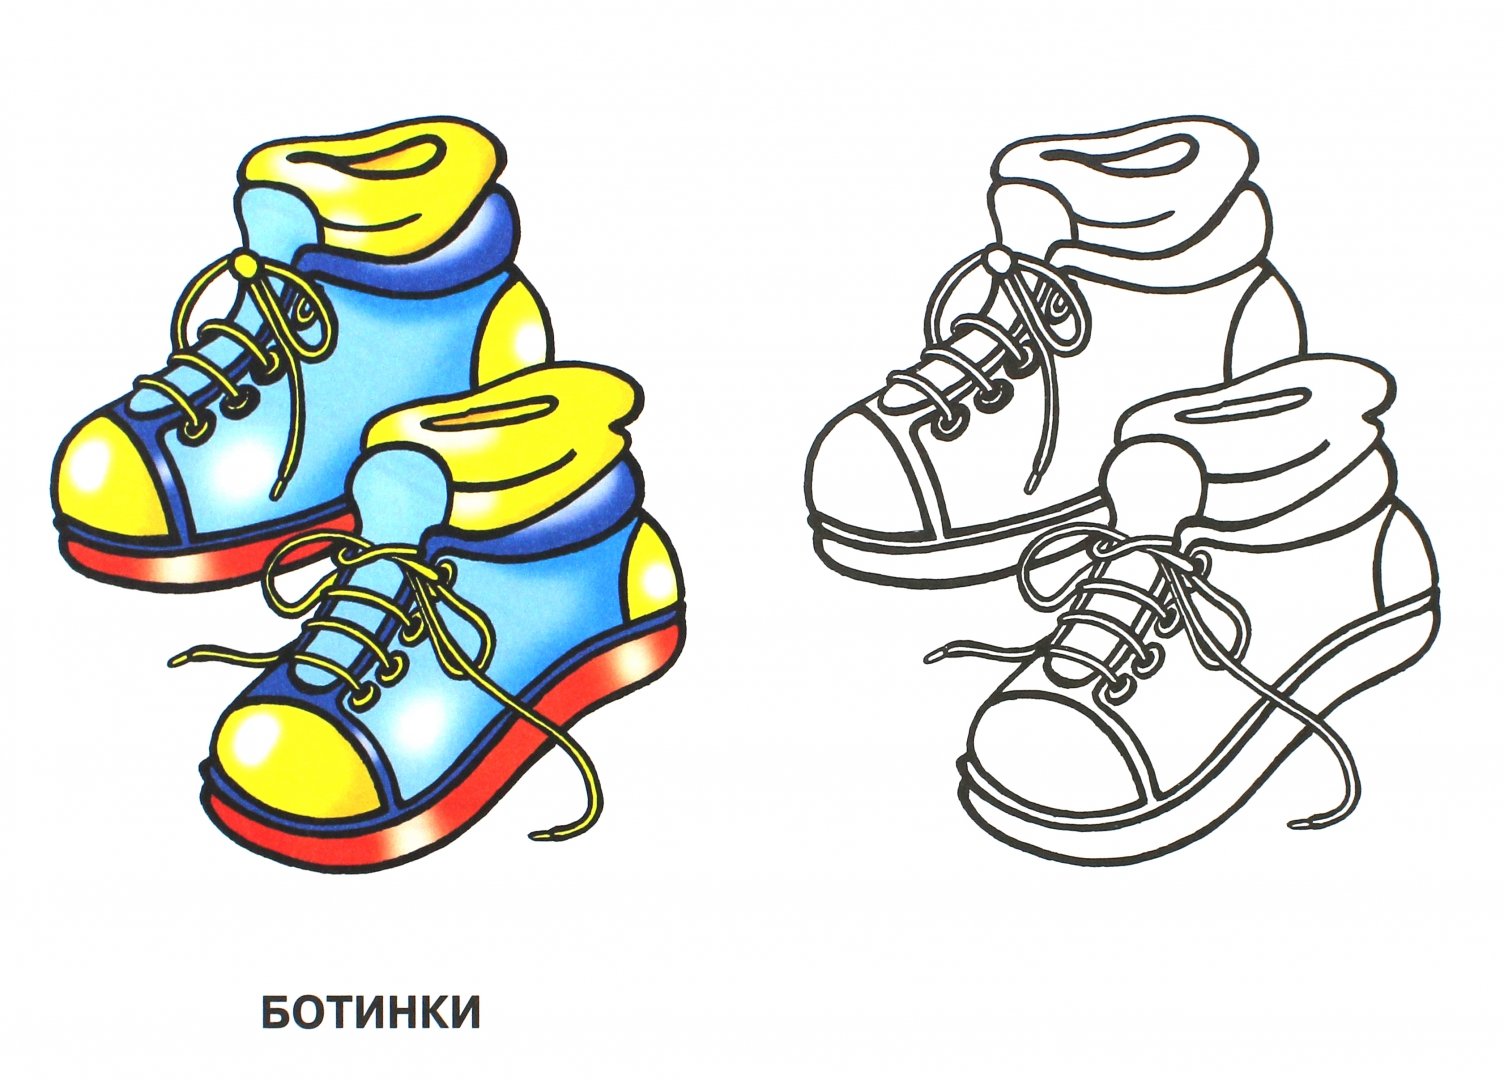 Иллюстрация 1 из 9 для Обувь | Лабиринт - книги. Источник: Лабиринт